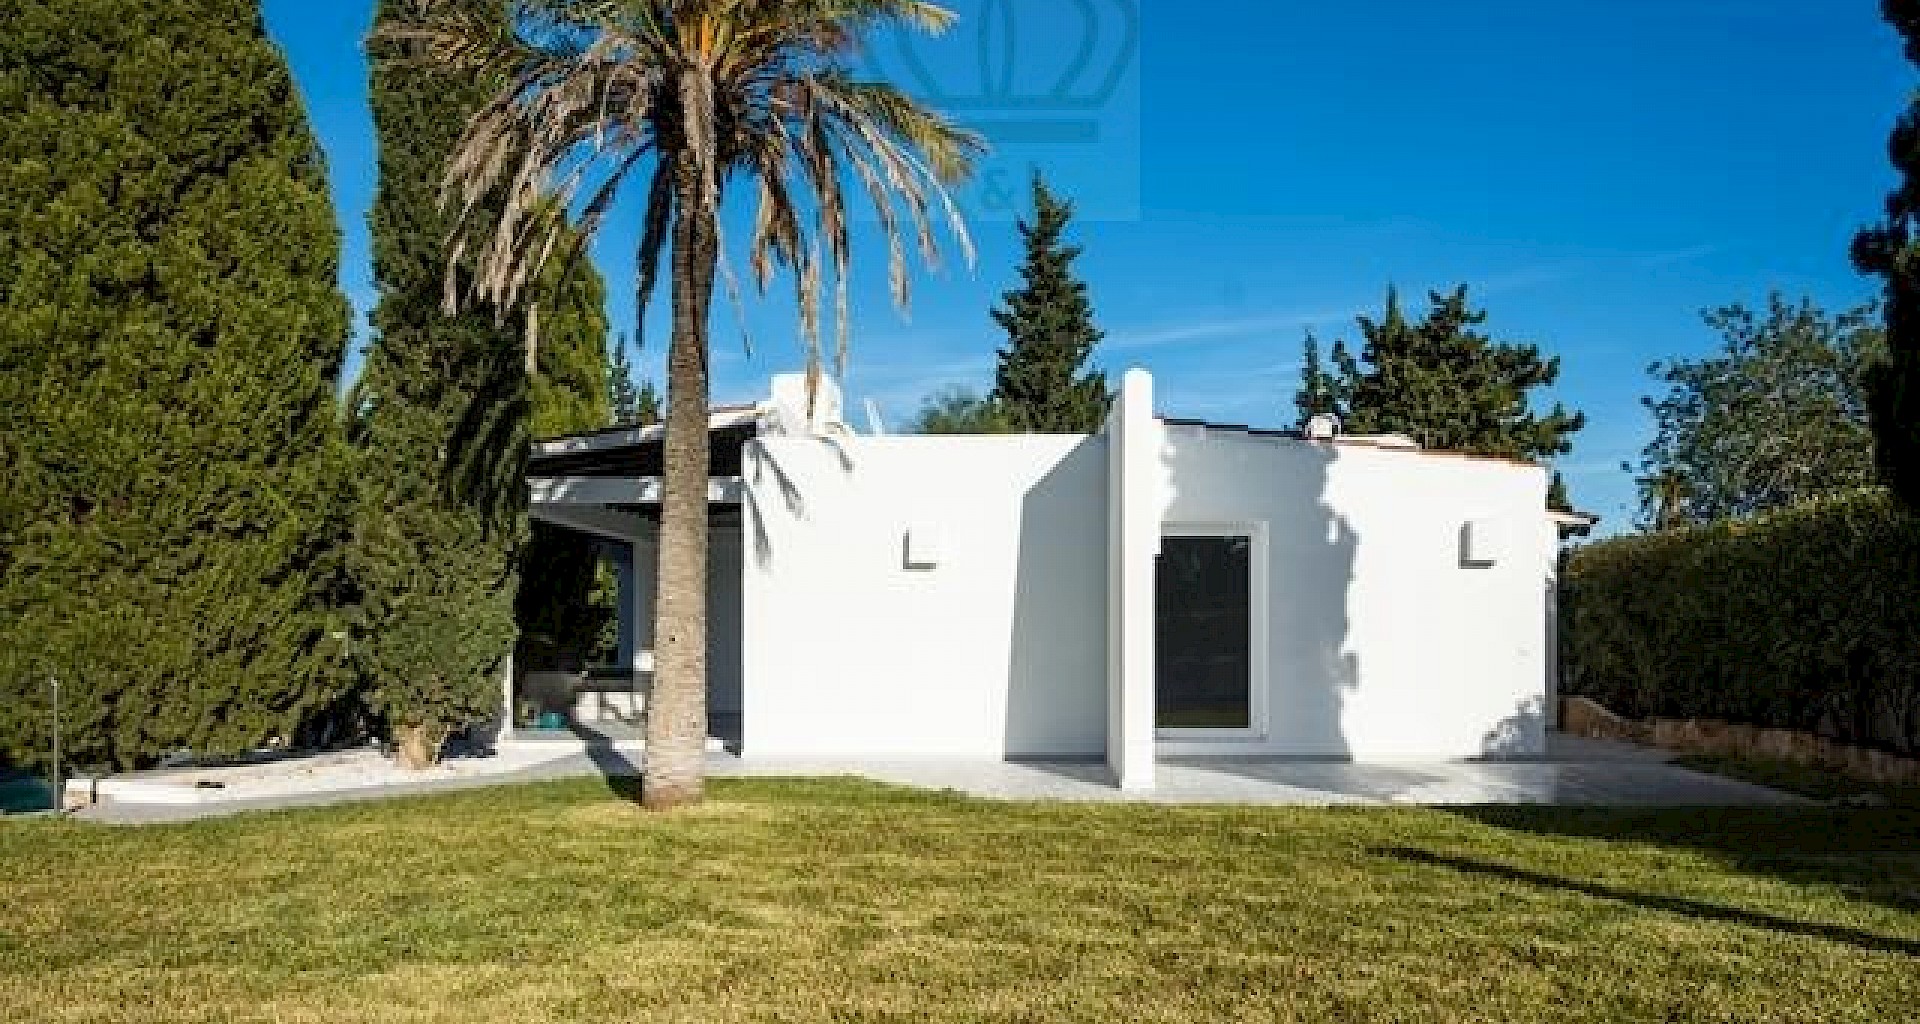 KROHN & LUEDEMANN Casa completamente renovada en Ibiza con piscina y mucha privacidad Benimussa (15)